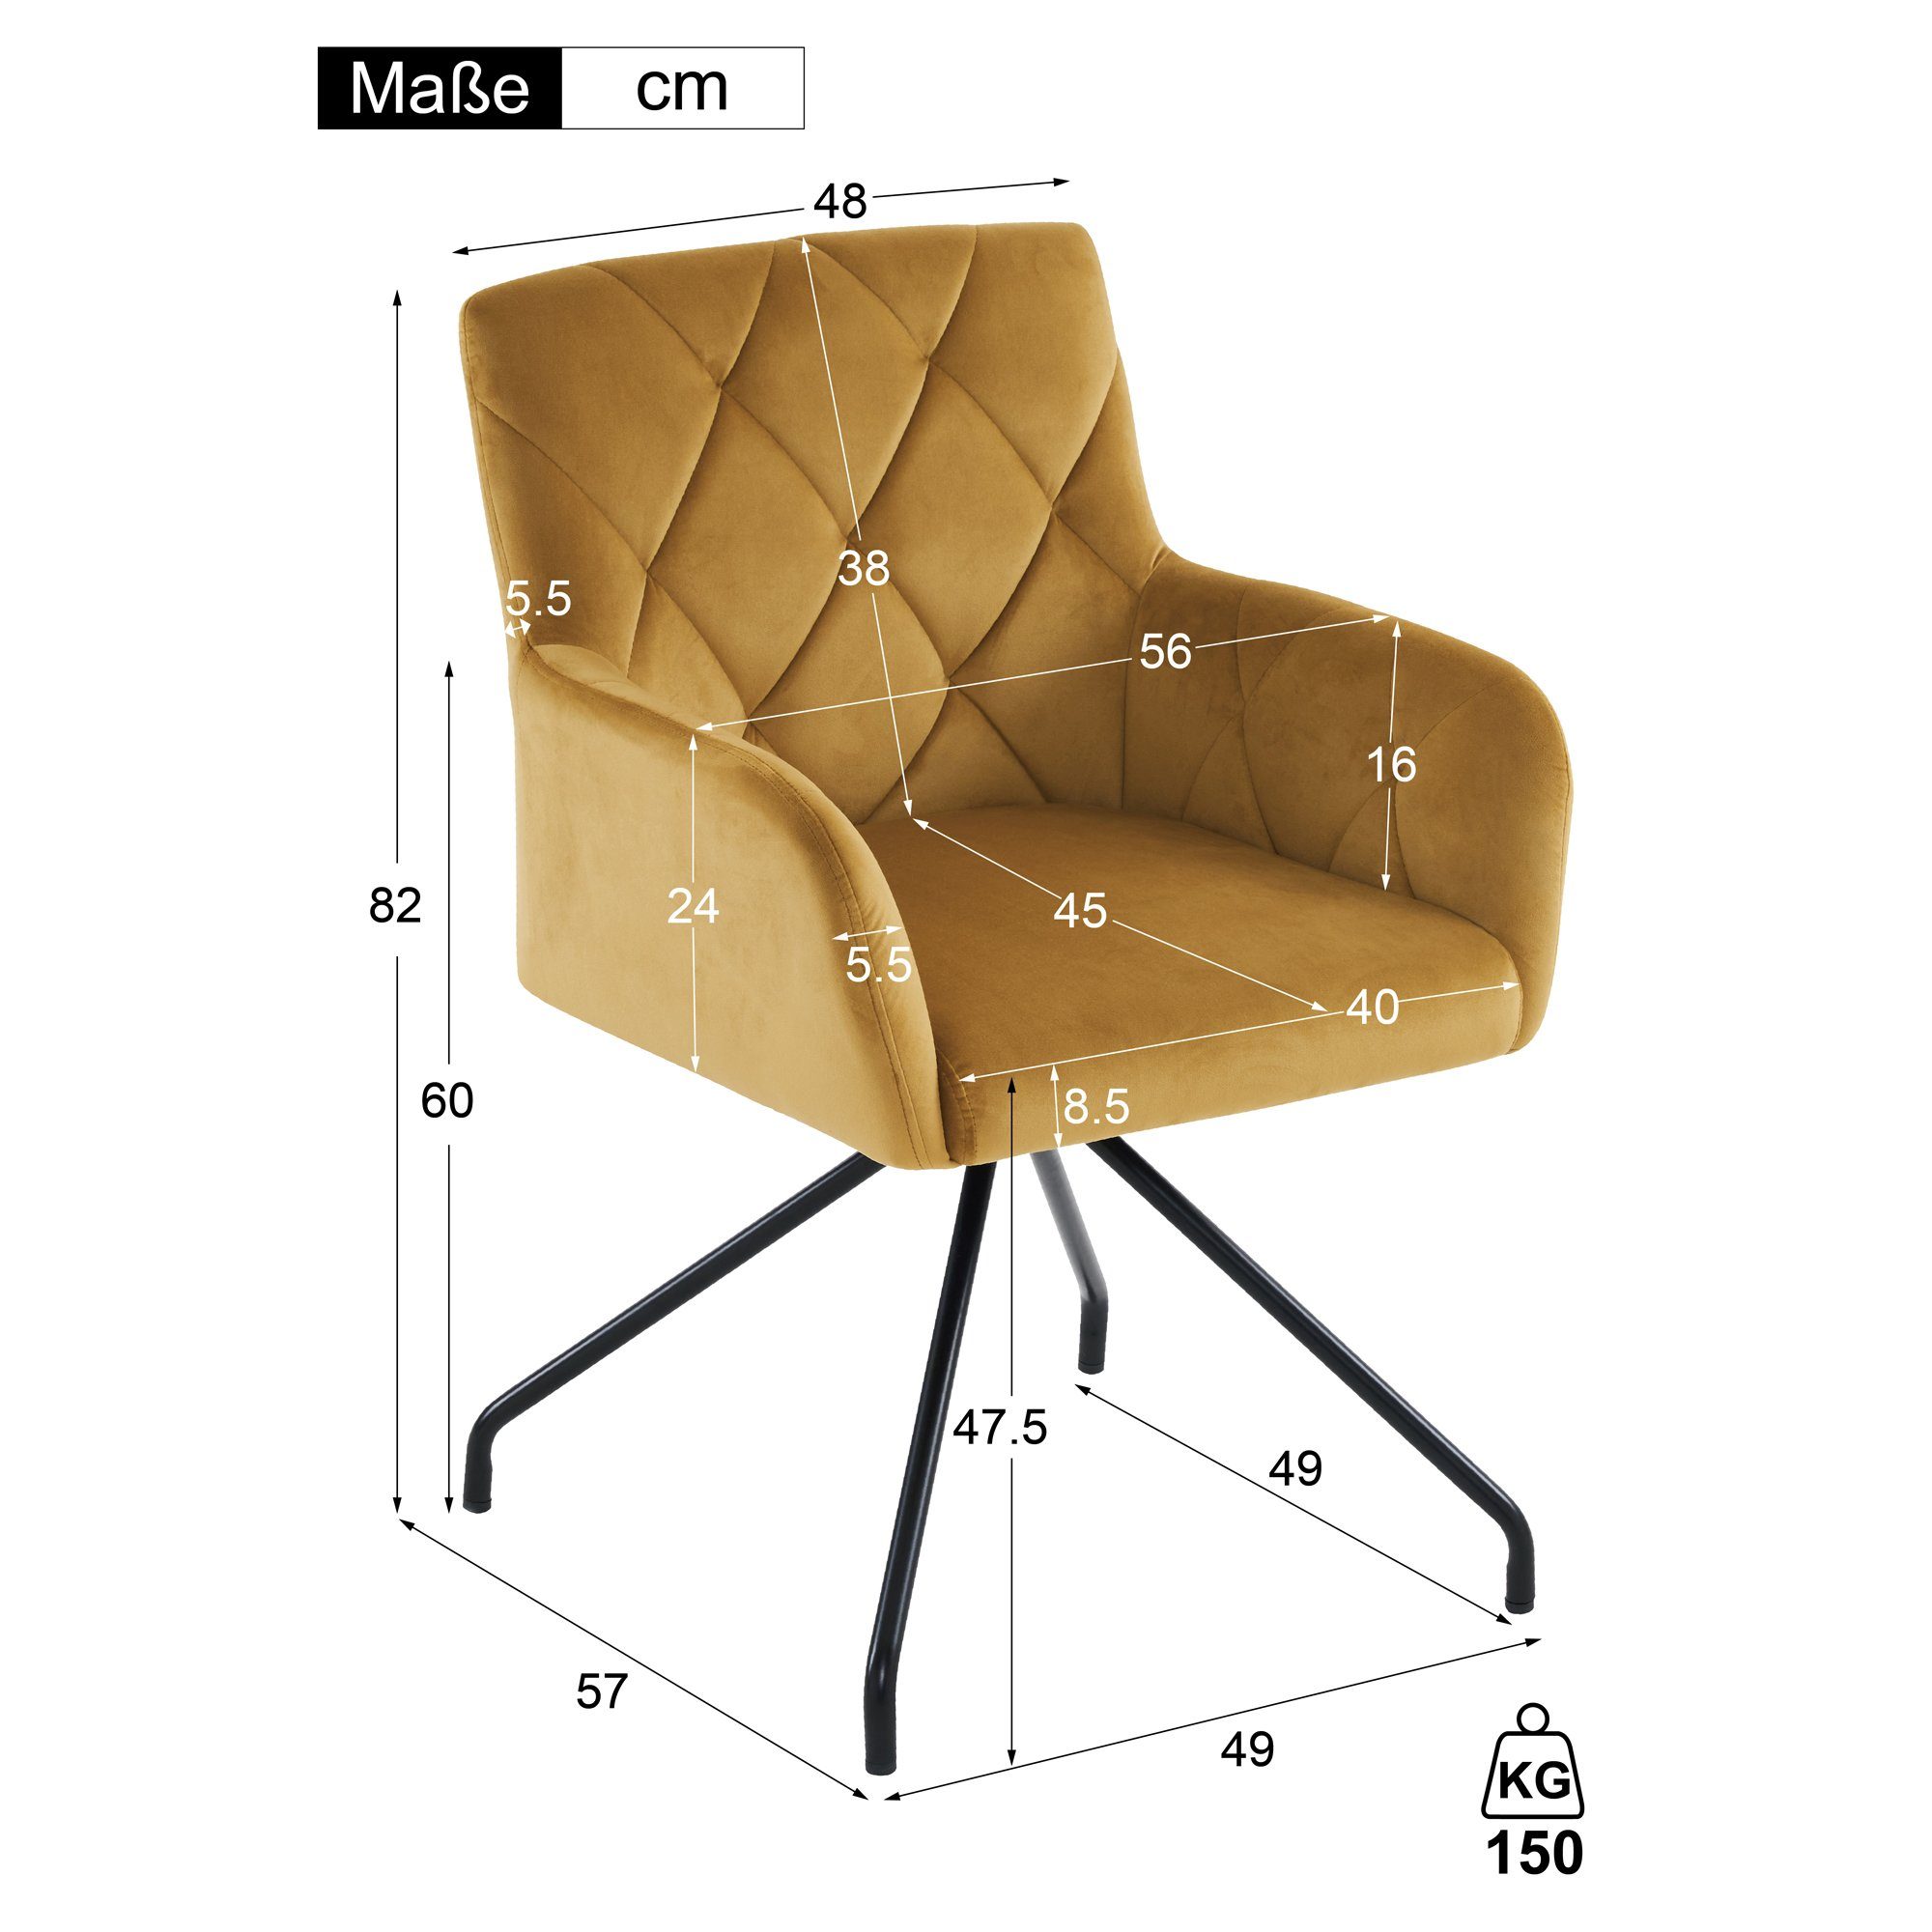 Odikalo Esszimmerstuhl 2er 4 Sessel Set Wohnzimmer grau/gelb Metallbeinen Gepolstert Samt